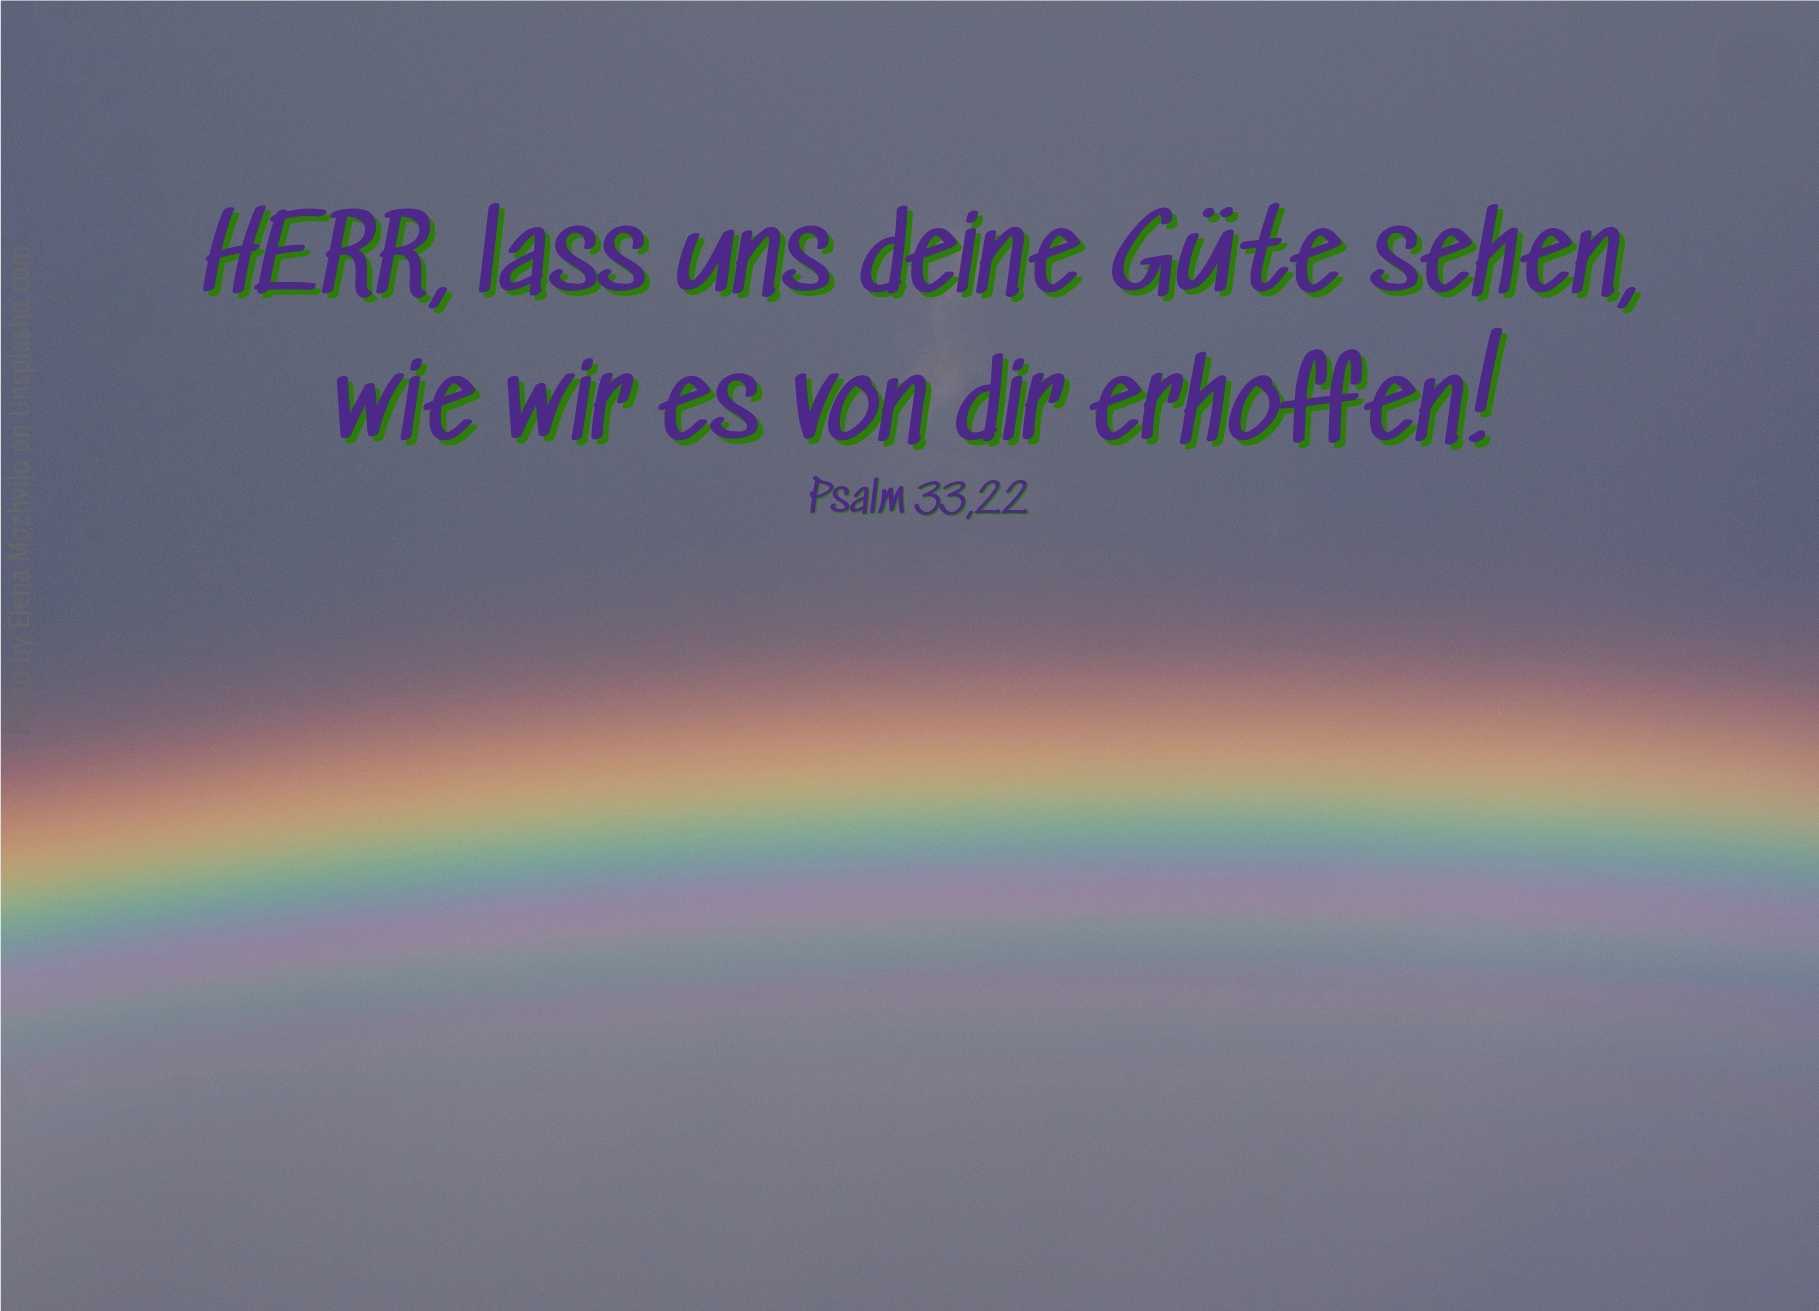 alt="regenbogen_erwartet_bibelhoerbuch_verzicht_um_der_liebe_willen"